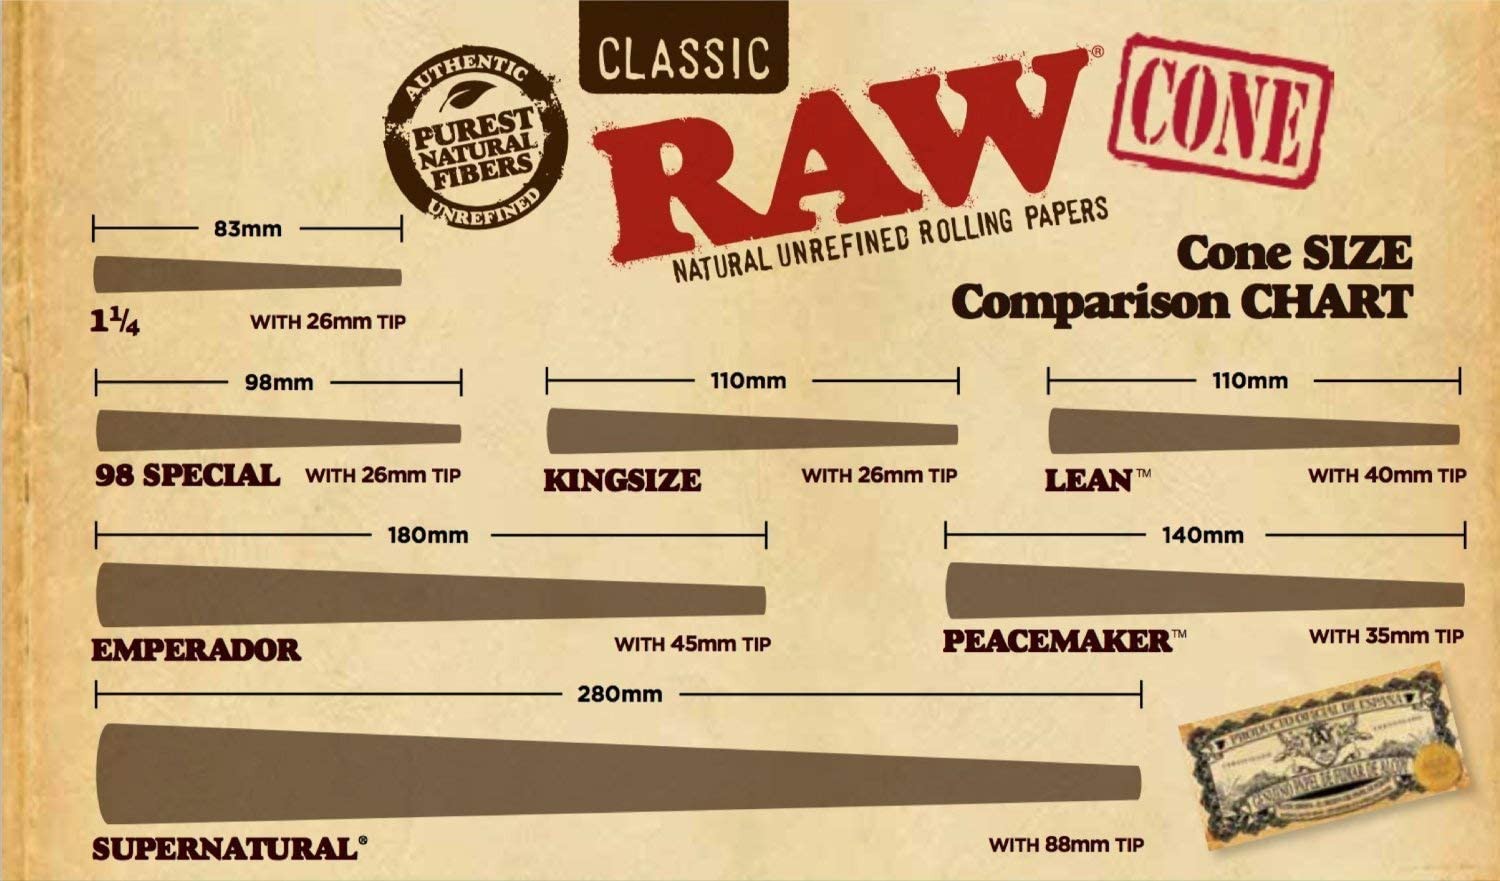 RAW® Cone SIZE Comparison CHART